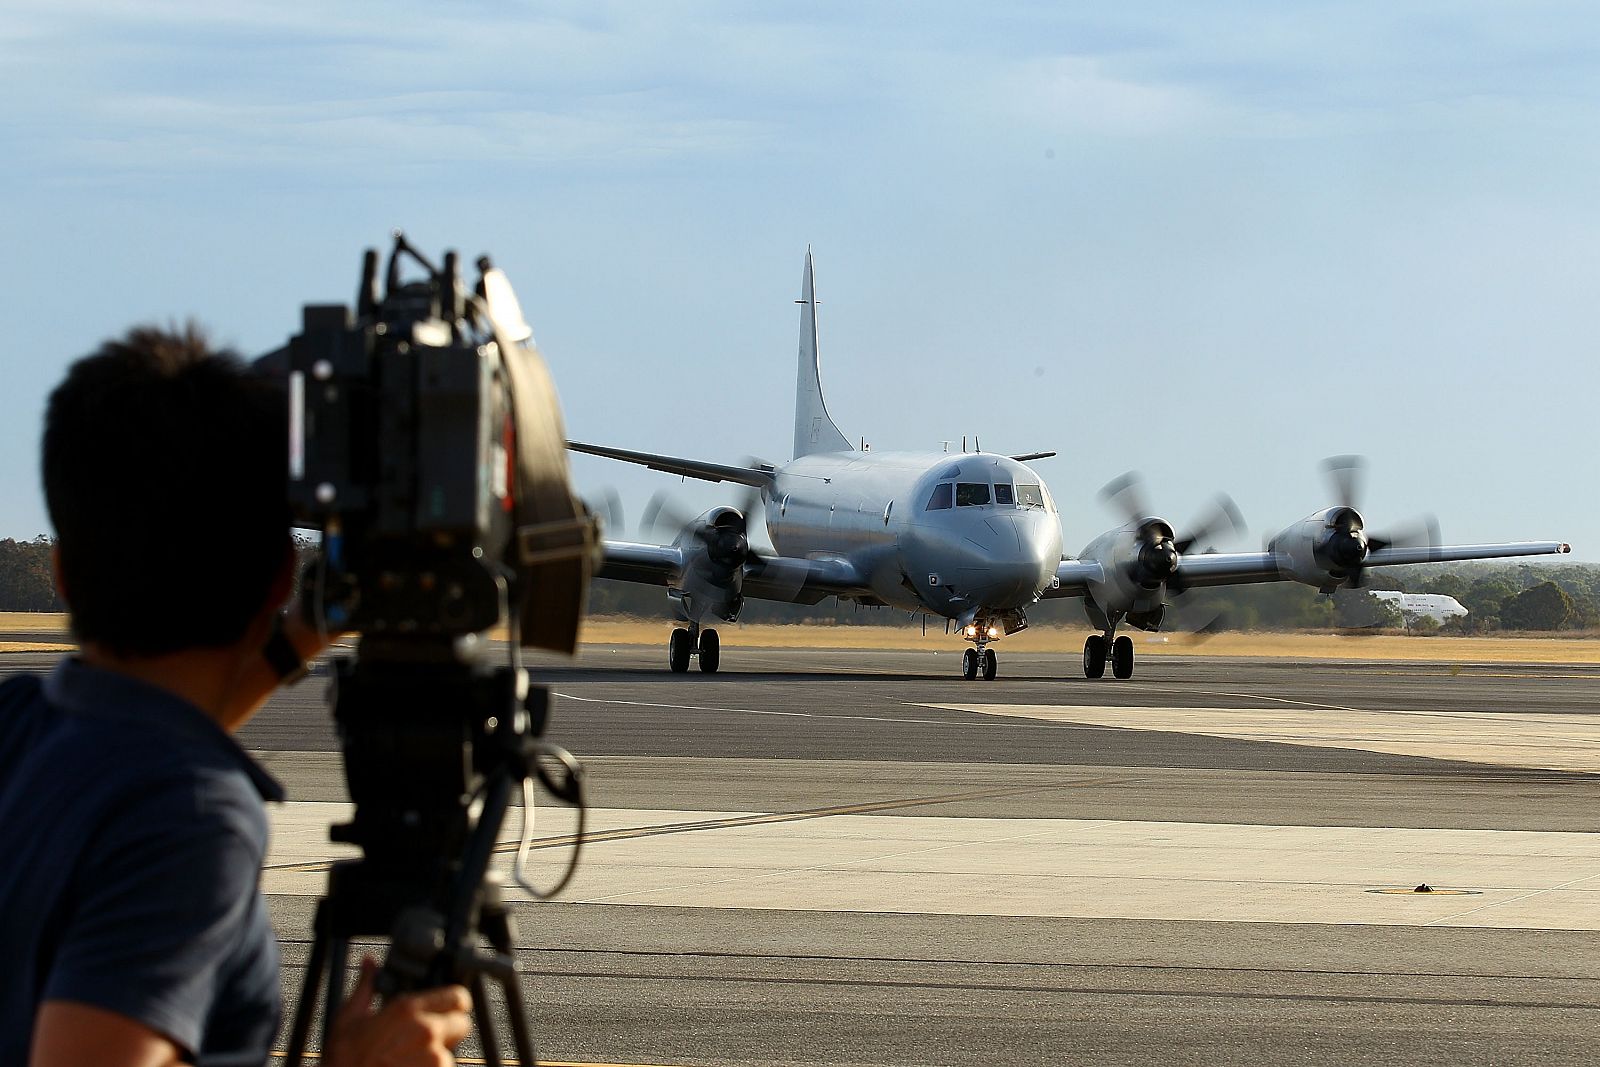 El avión P3 Orion regresa a su base de Australia tras participar en avistar objetos en el mar que podrían pertenecer al avión desaparecido